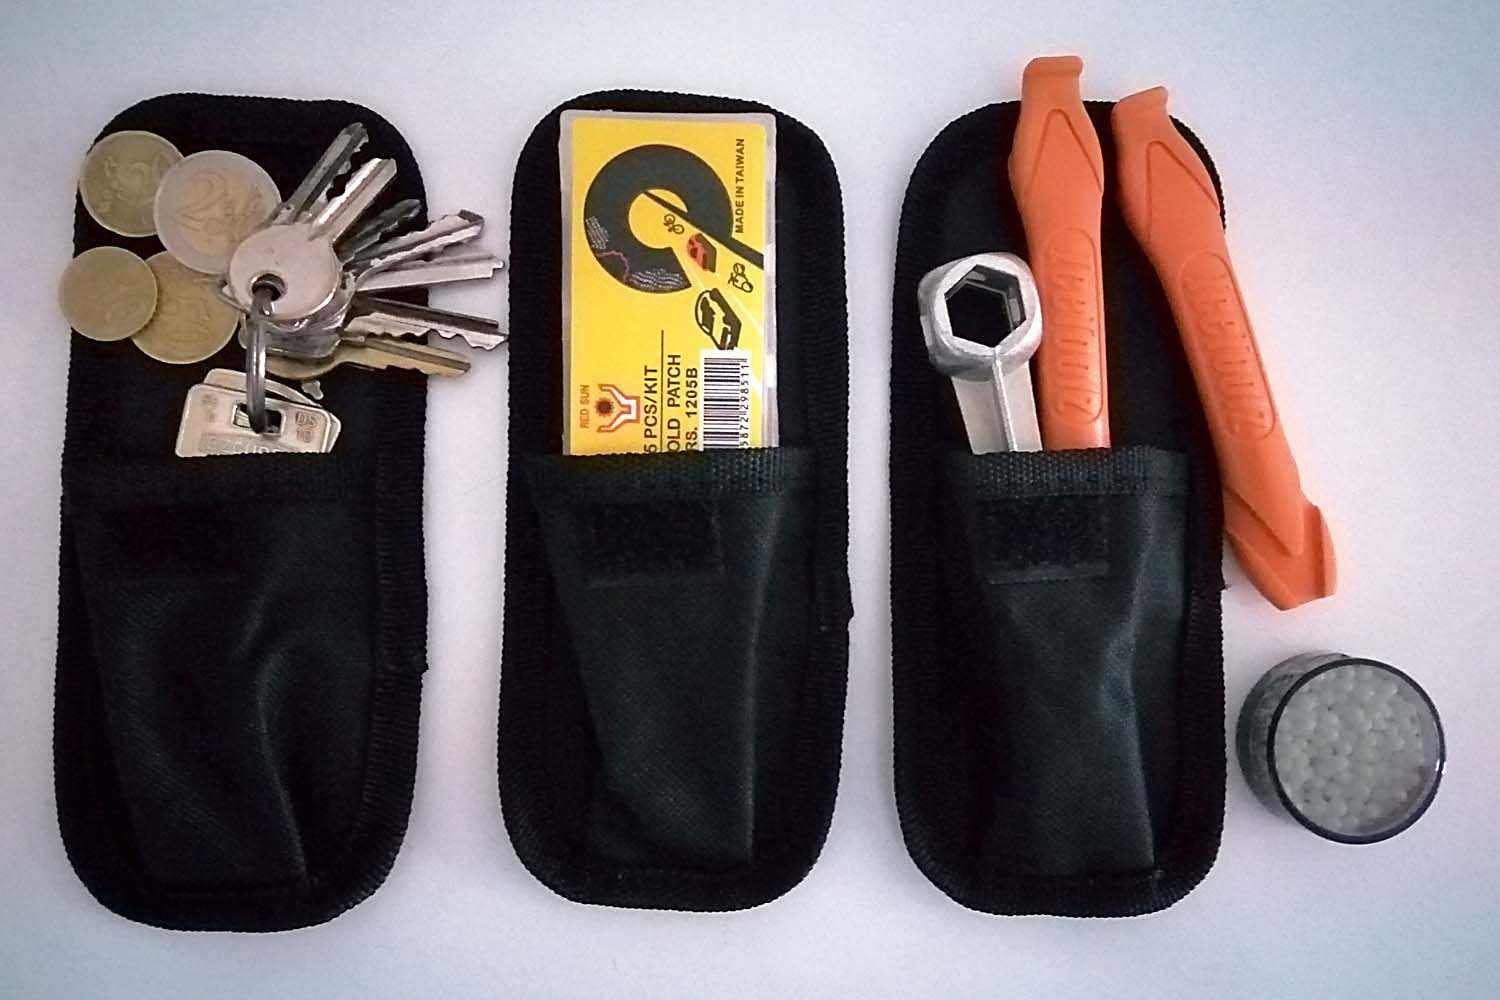 Mini bolsa p/ peq. objetos: chaves lenços moedas ferramentas bicicleta